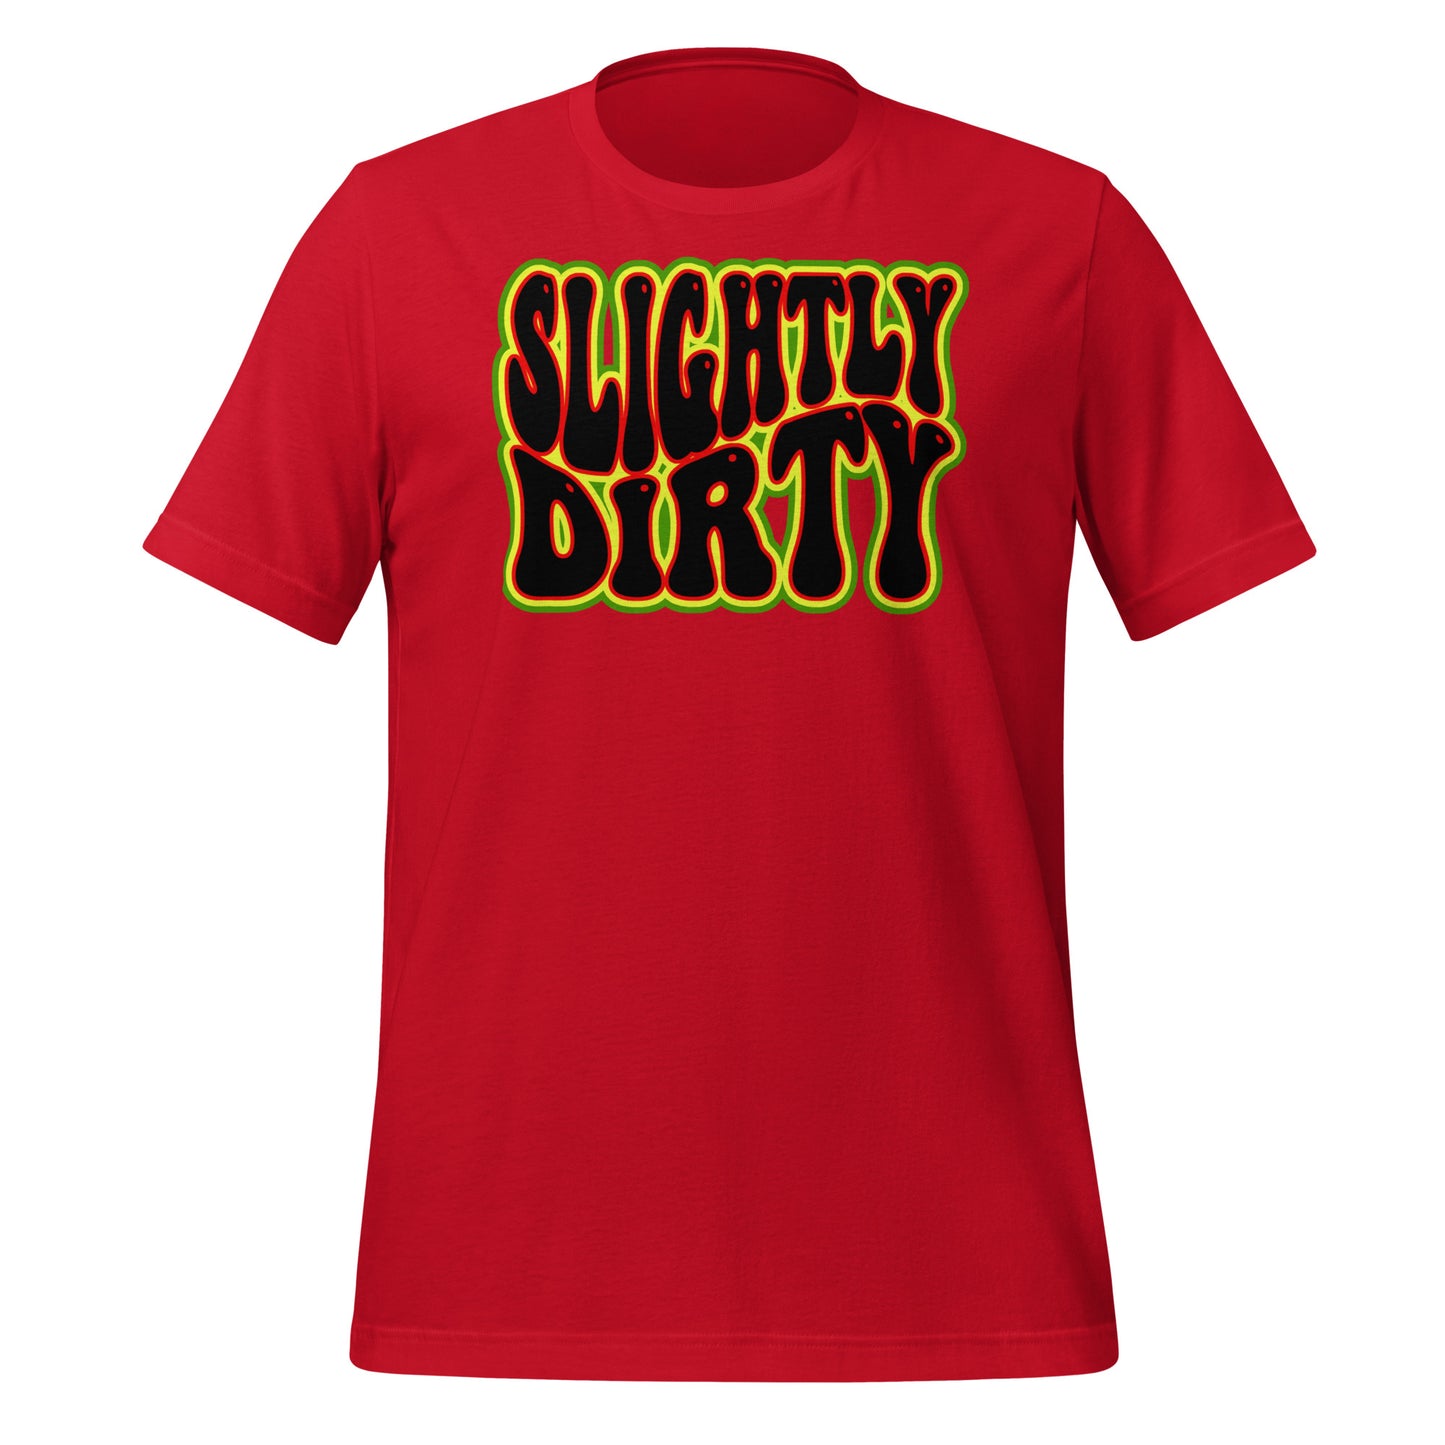 Slightly Dirty Rasta Outlined Black Design Unisex t-shirt